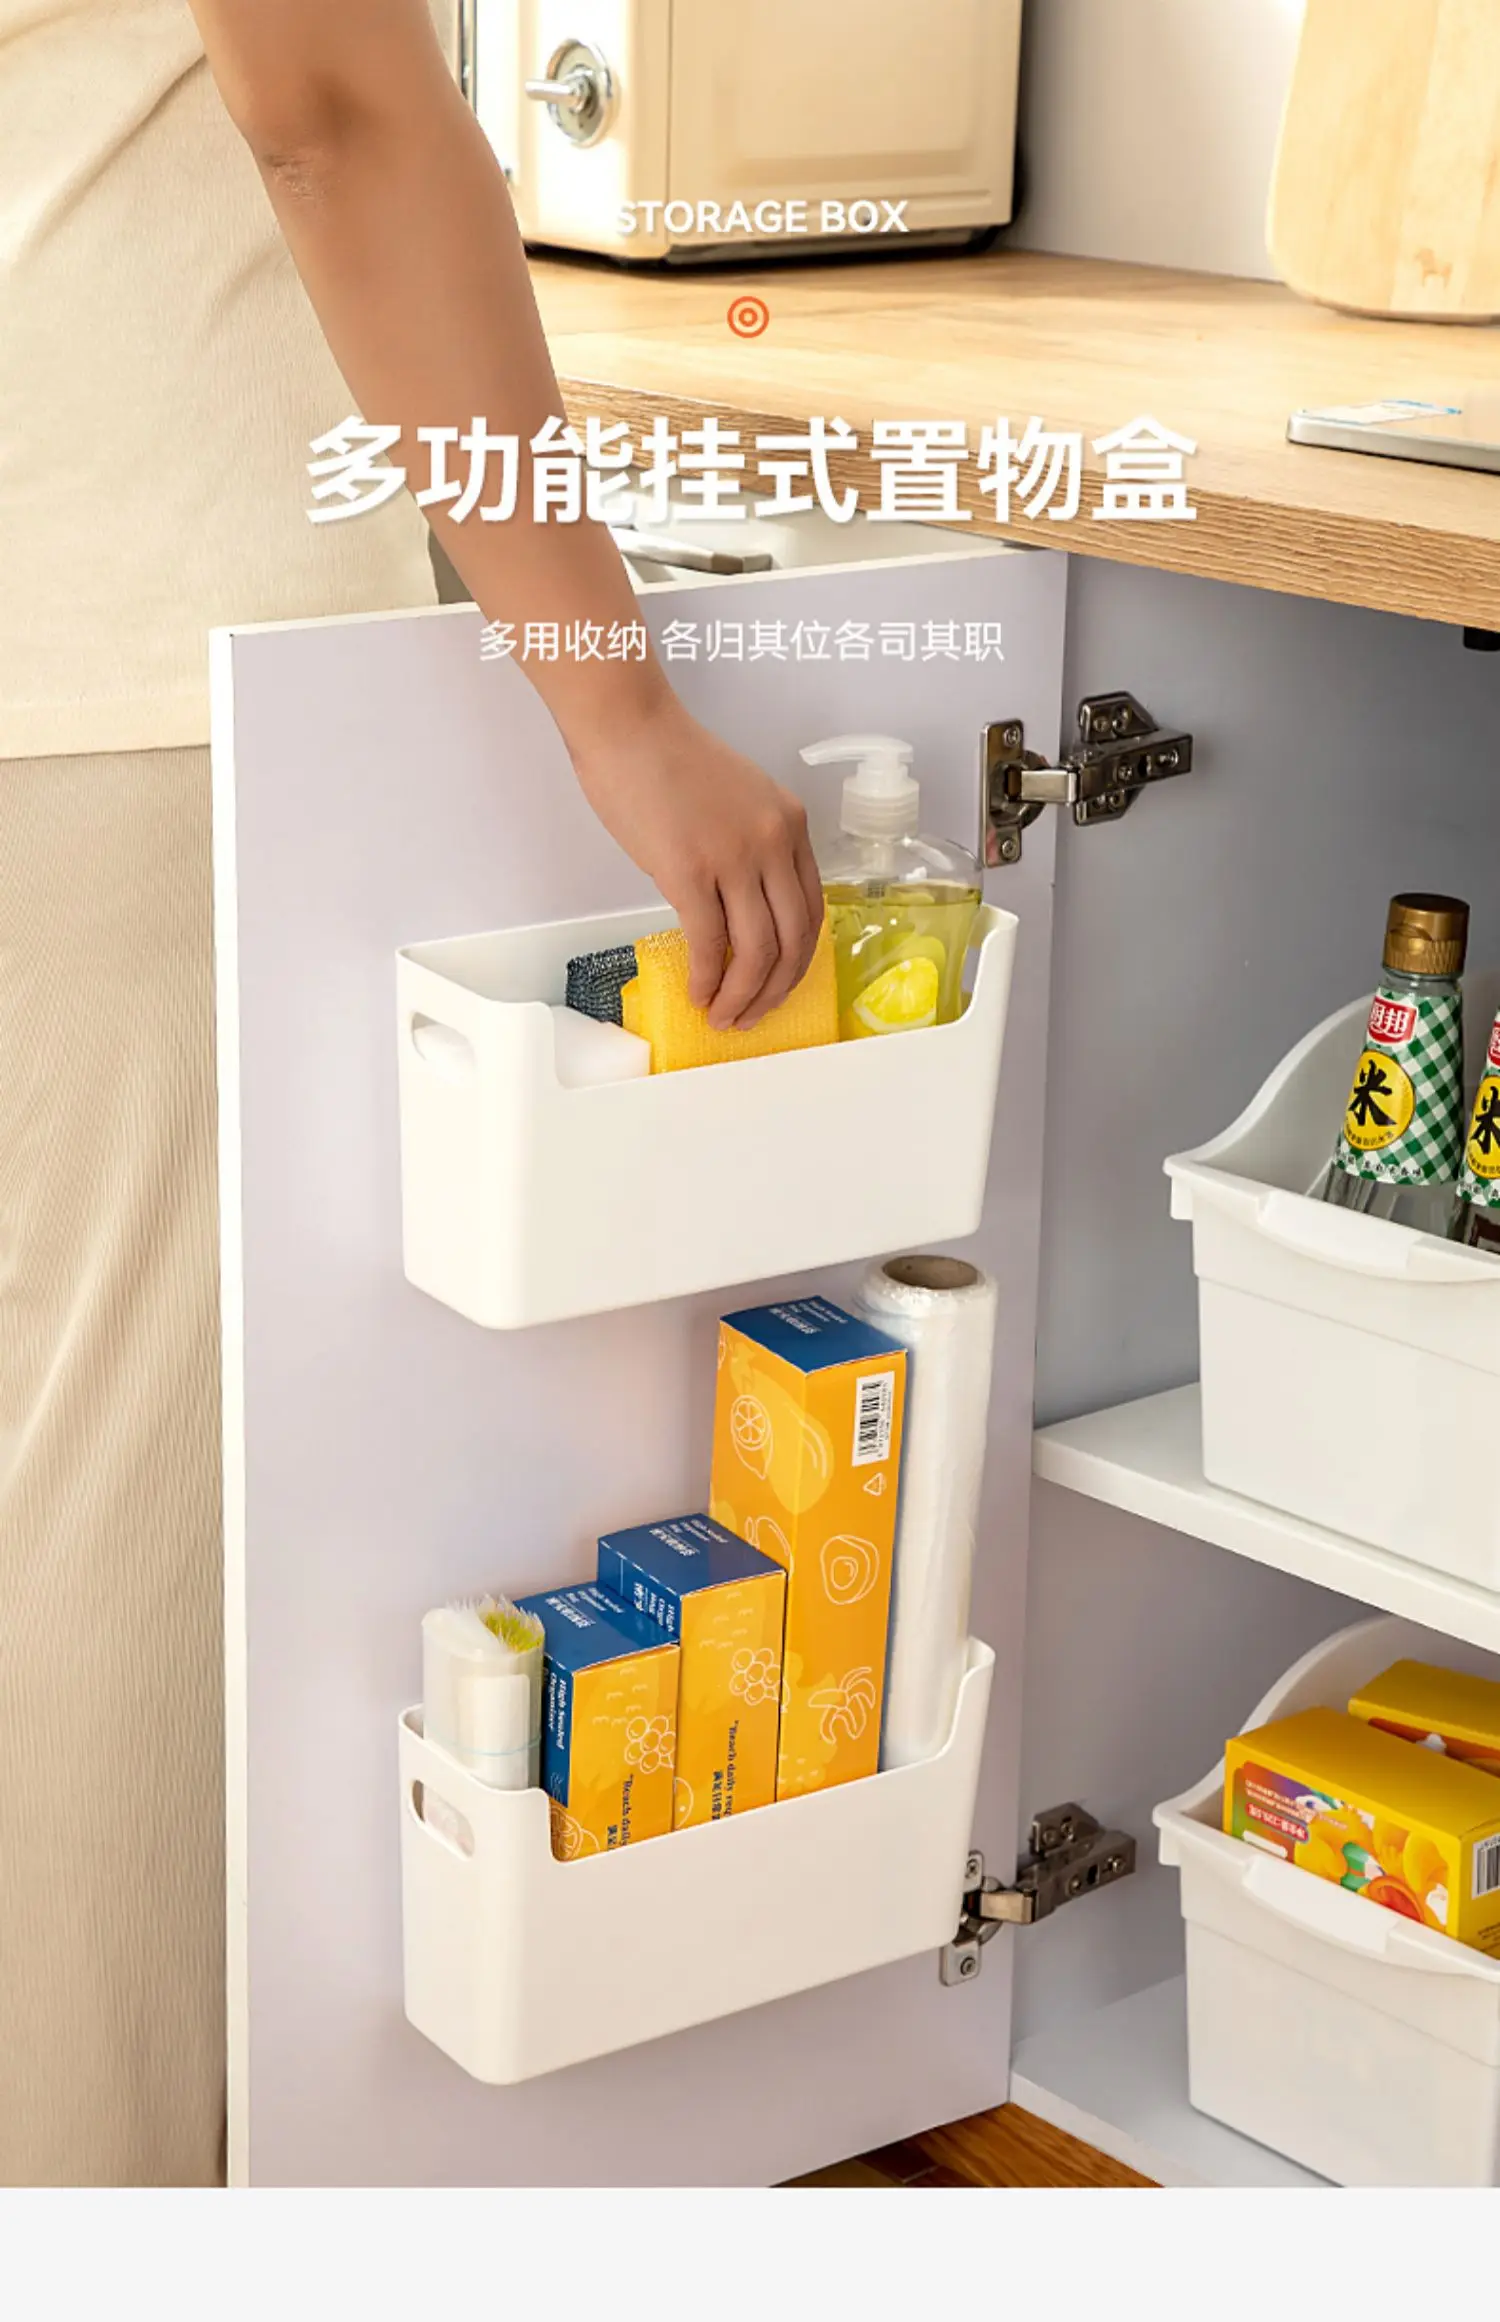 Wall Hanging Storage Box Kitchen Refrigerator Cabinet Door Storage Shelf  Basket Cling film Tissue Box Refrigerator Organizer - AliExpress